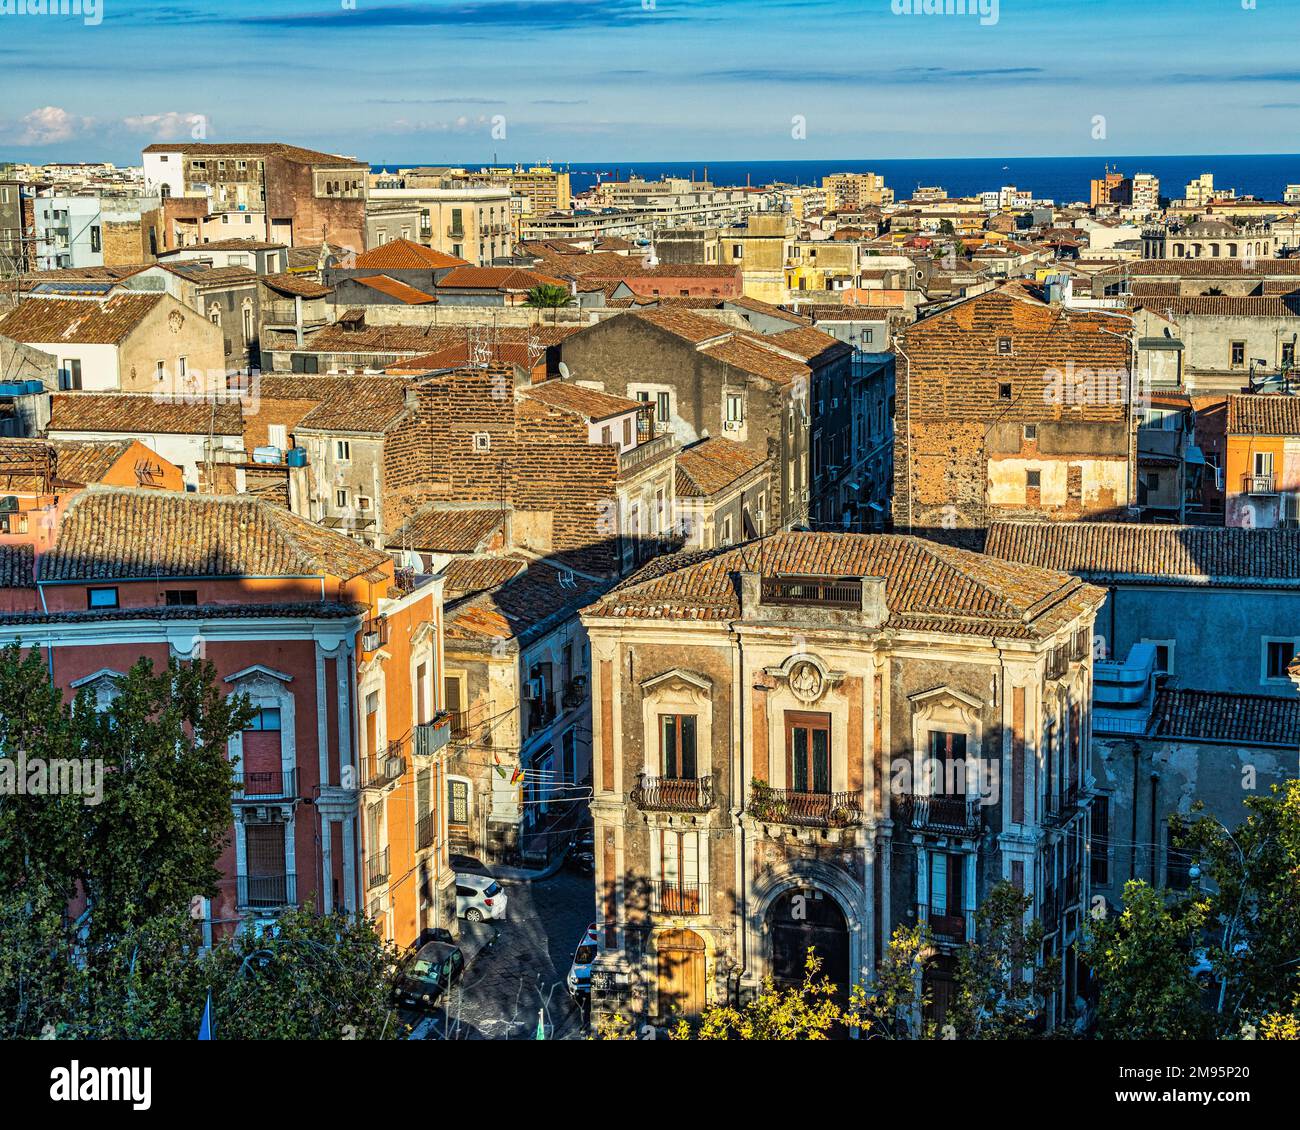 Vue aérienne de la ville de Catane et de son port commercial. Catane, Sicile, Italie, Europe Banque D'Images